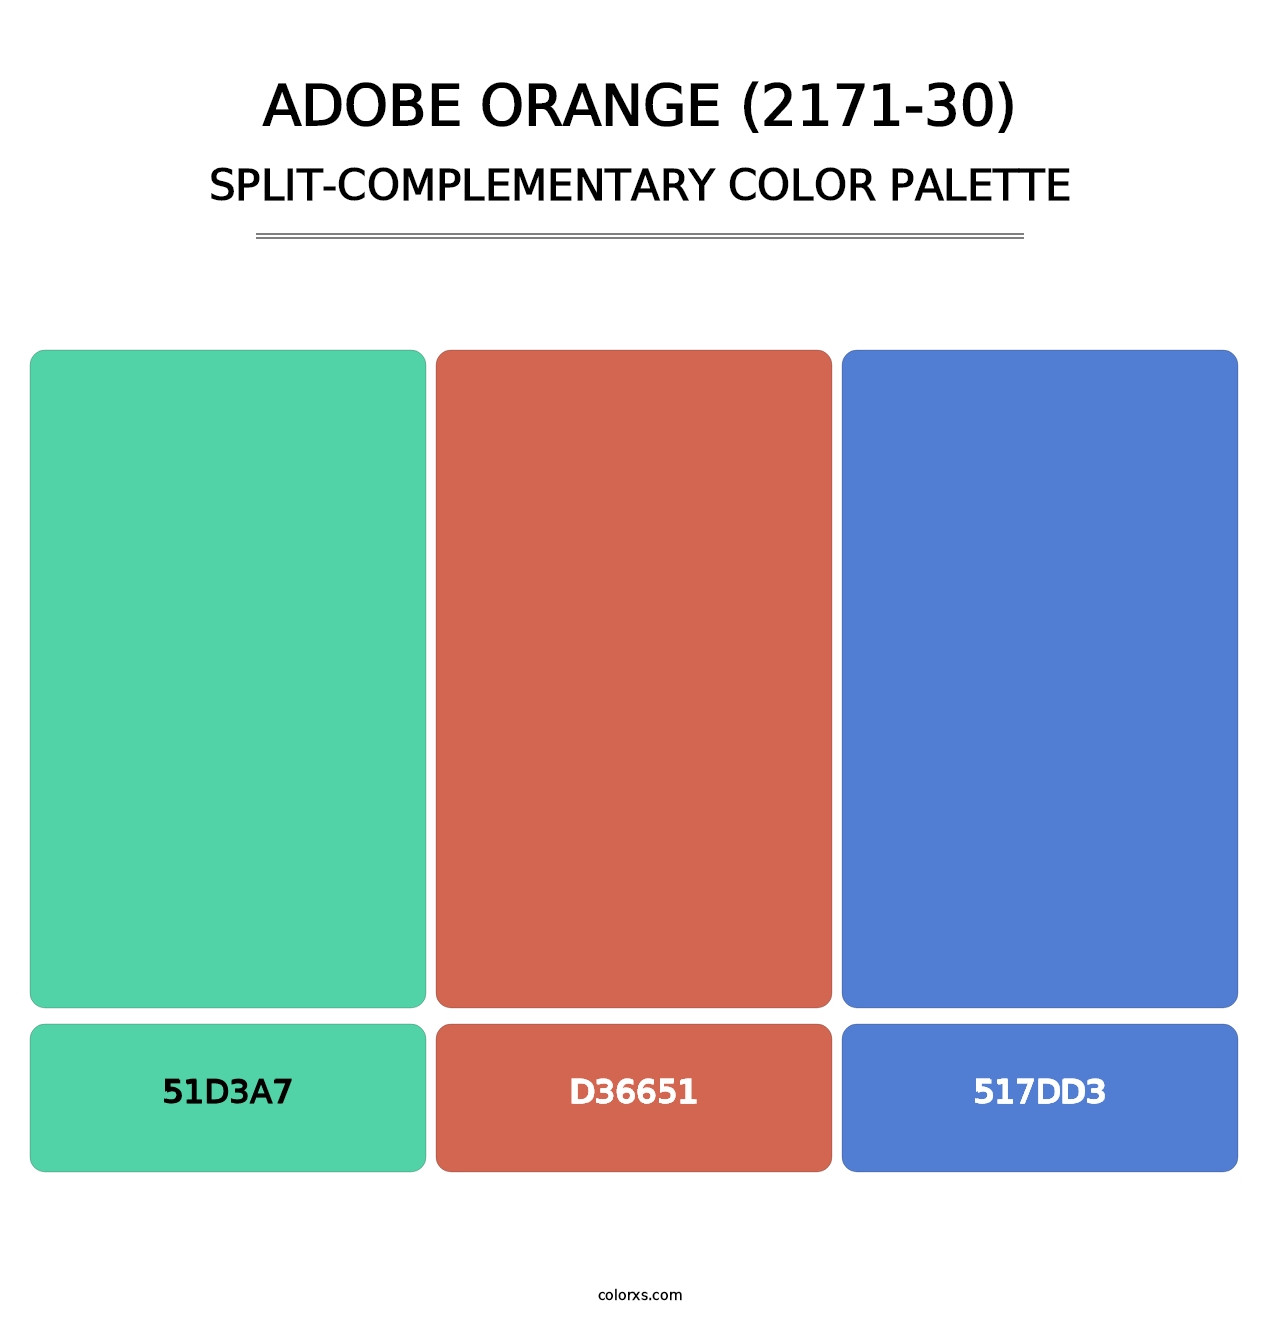 Adobe Orange (2171-30) - Split-Complementary Color Palette